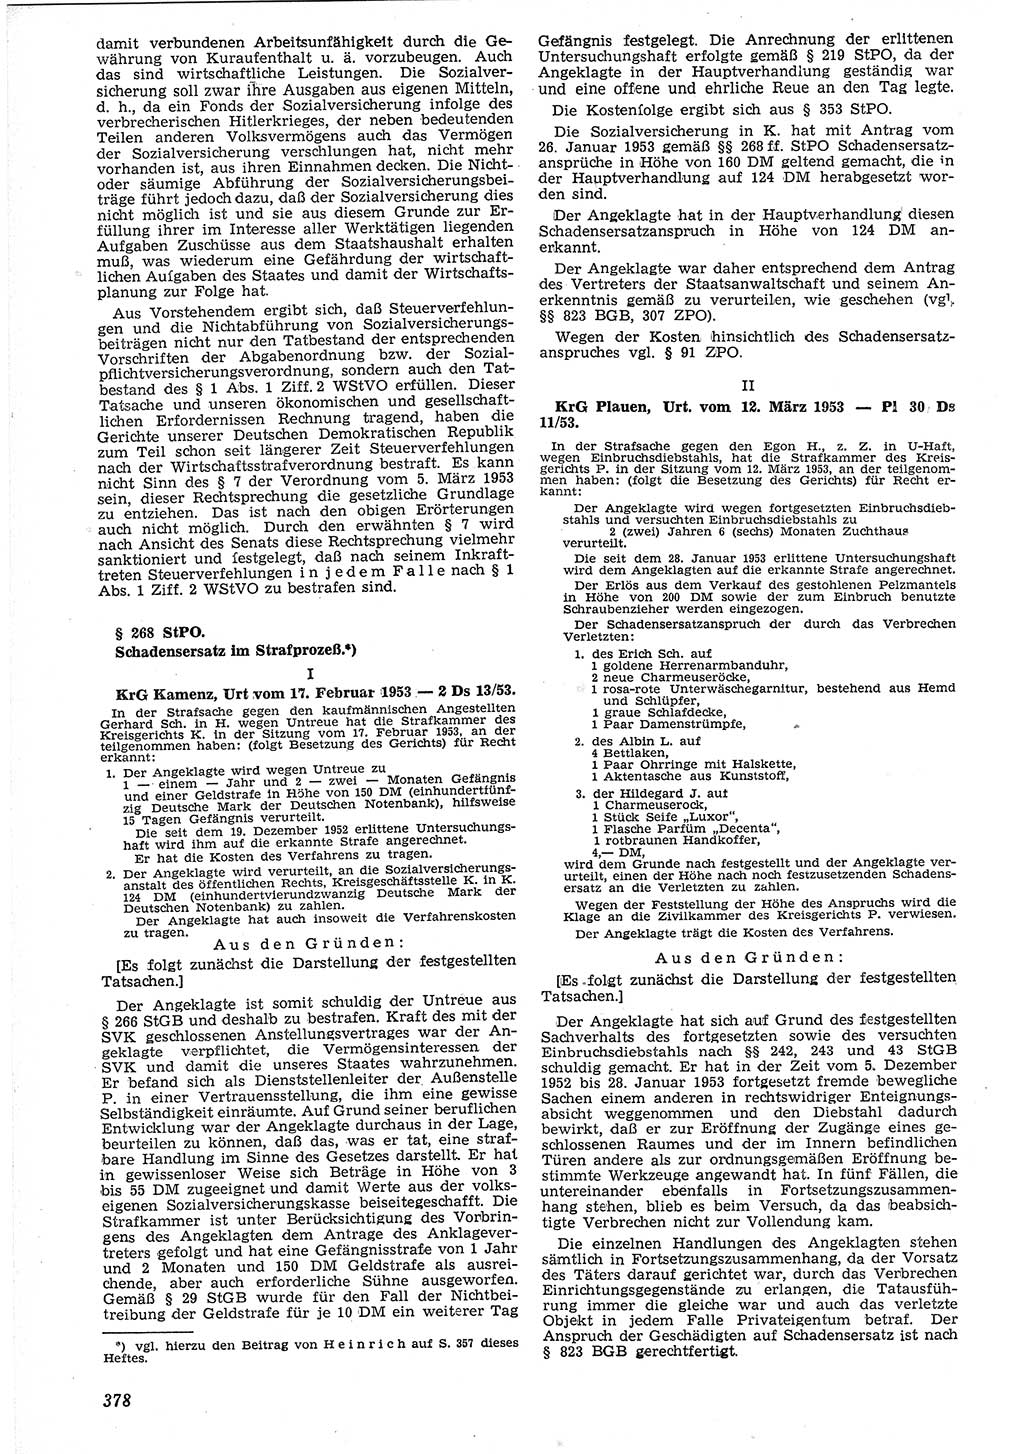 Neue Justiz (NJ), Zeitschrift für Recht und Rechtswissenschaft [Deutsche Demokratische Republik (DDR)], 7. Jahrgang 1953, Seite 378 (NJ DDR 1953, S. 378)